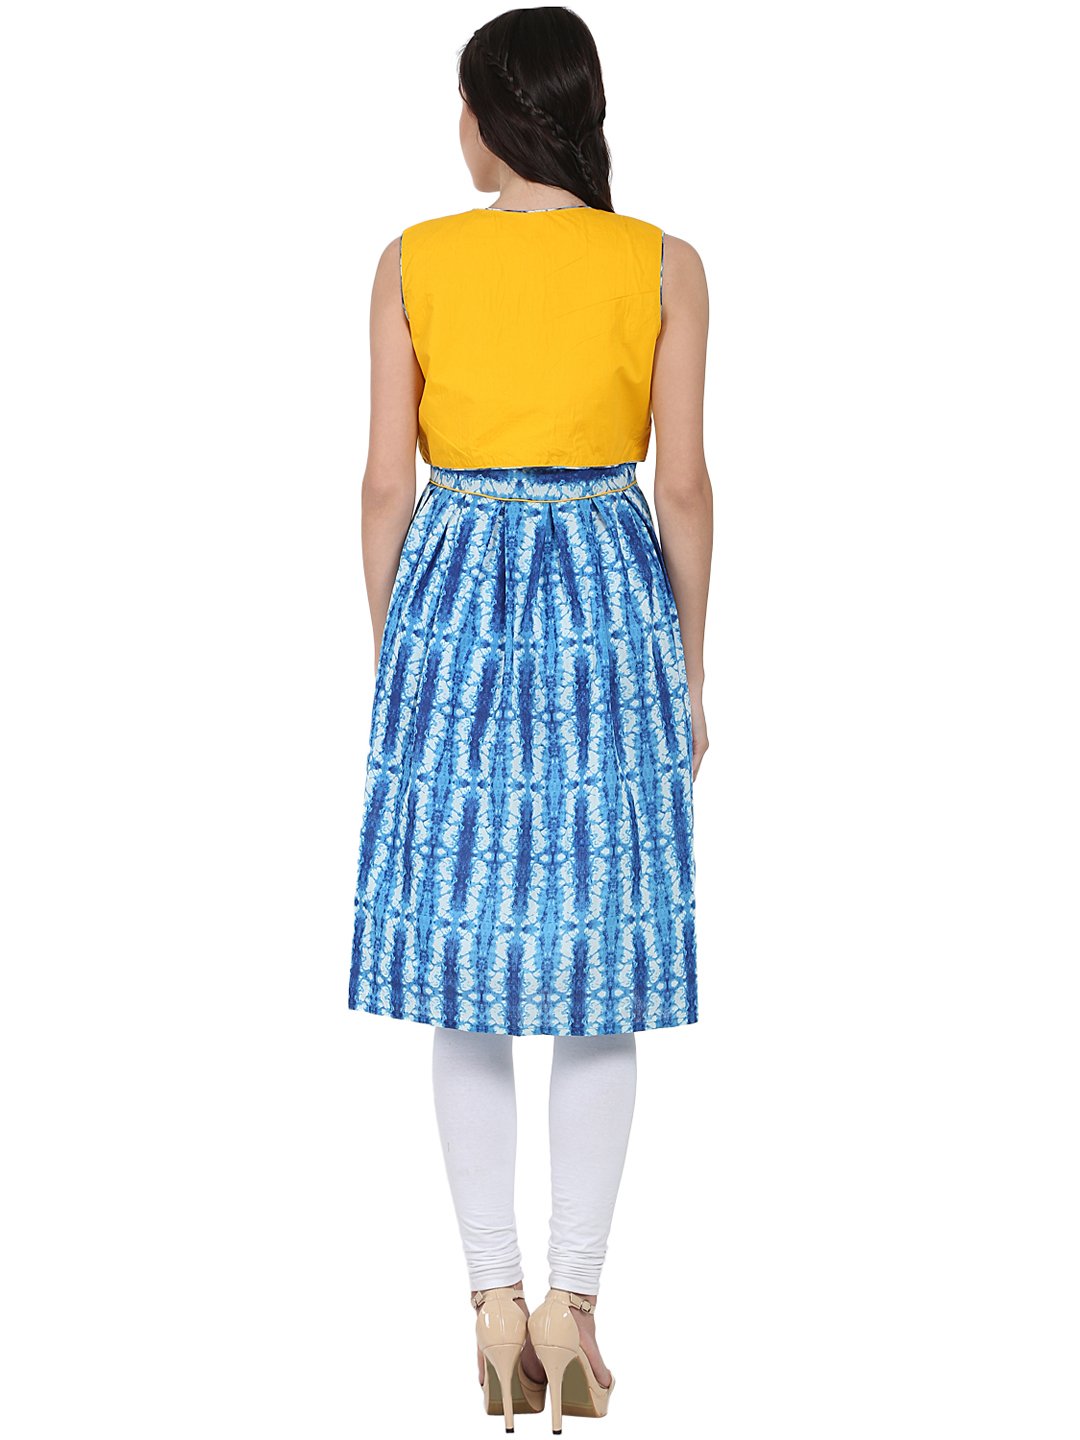 Women's Blue Printed Sleeveless Cotton Anarkali Kurta With Yellow Jacket - Nayo Clothing